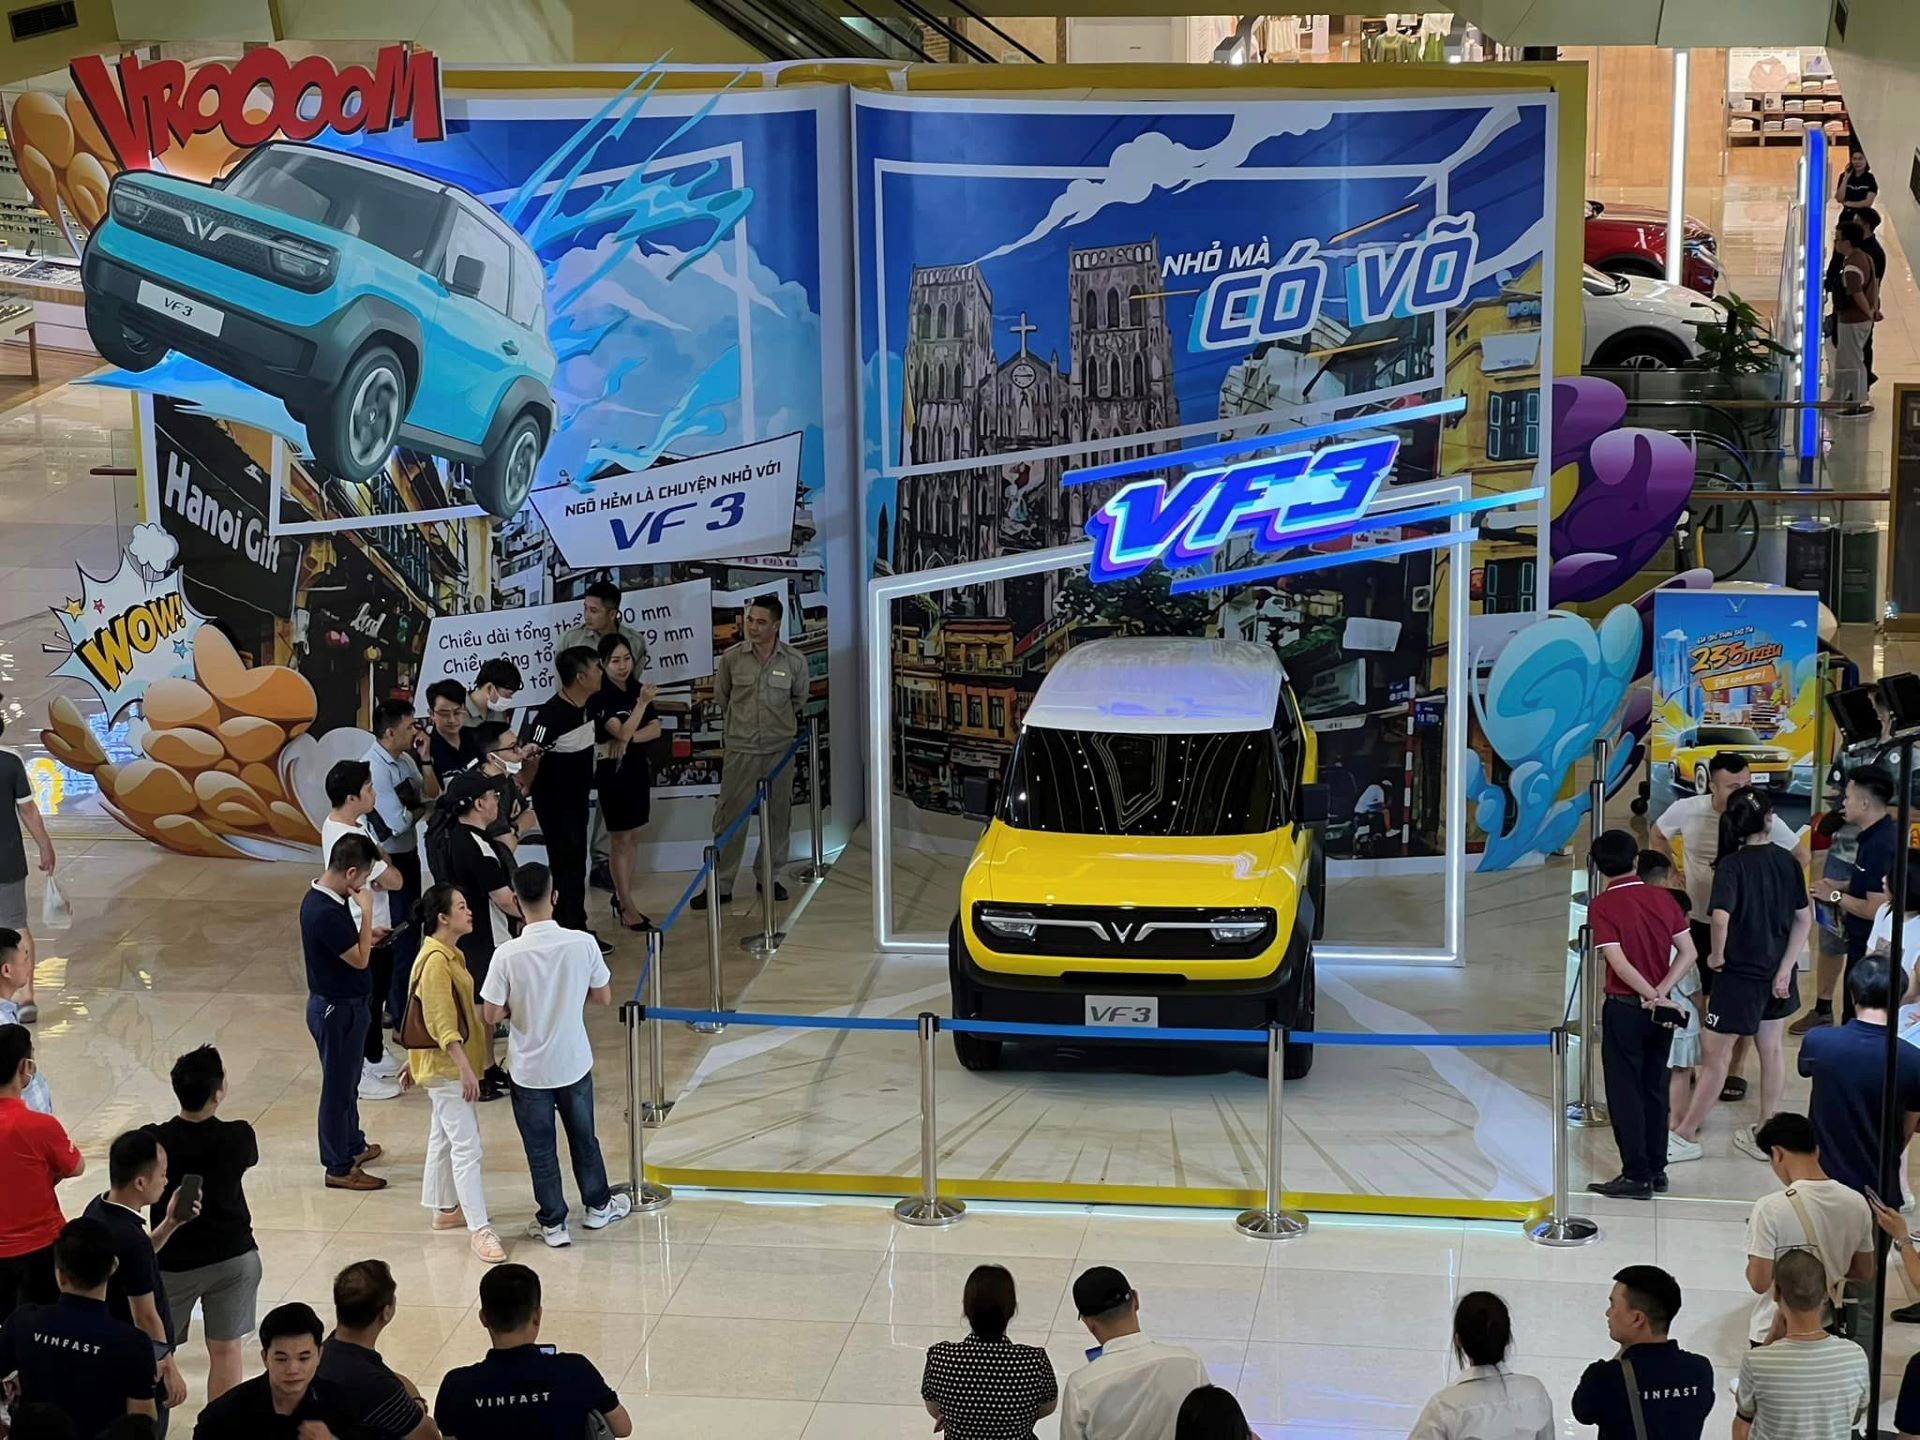 Kỷ lục thị trường ô tô Việt: Cứ hơn 8 giây có một người chốt cọc VinFast VF 3 ảnh 1